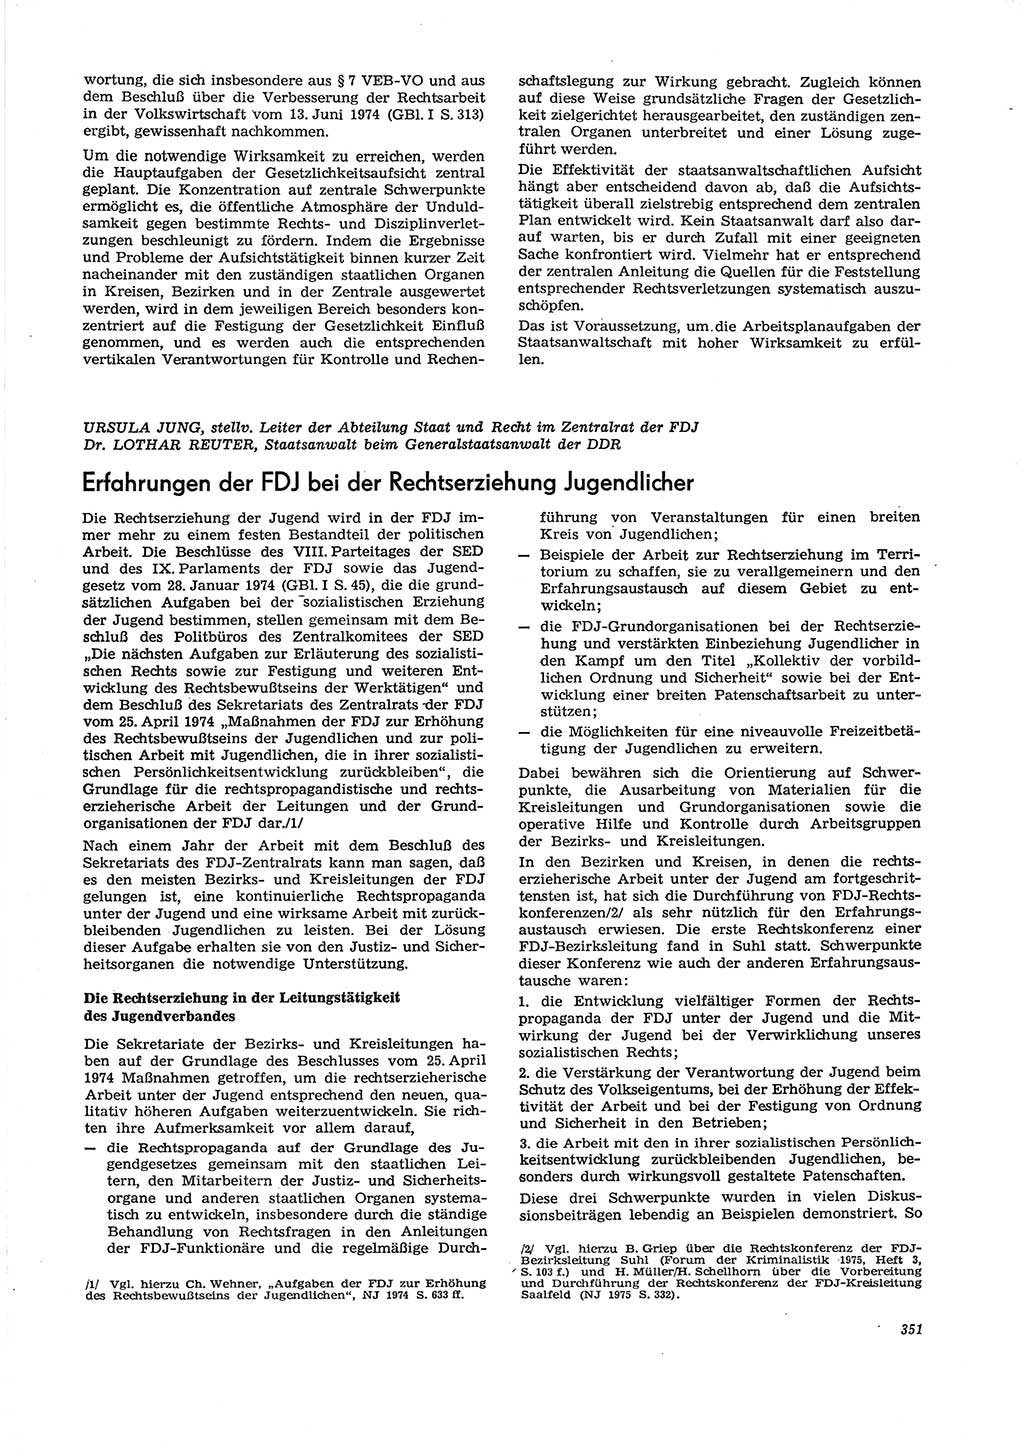 Neue Justiz (NJ), Zeitschrift für Recht und Rechtswissenschaft [Deutsche Demokratische Republik (DDR)], 29. Jahrgang 1975, Seite 351 (NJ DDR 1975, S. 351)